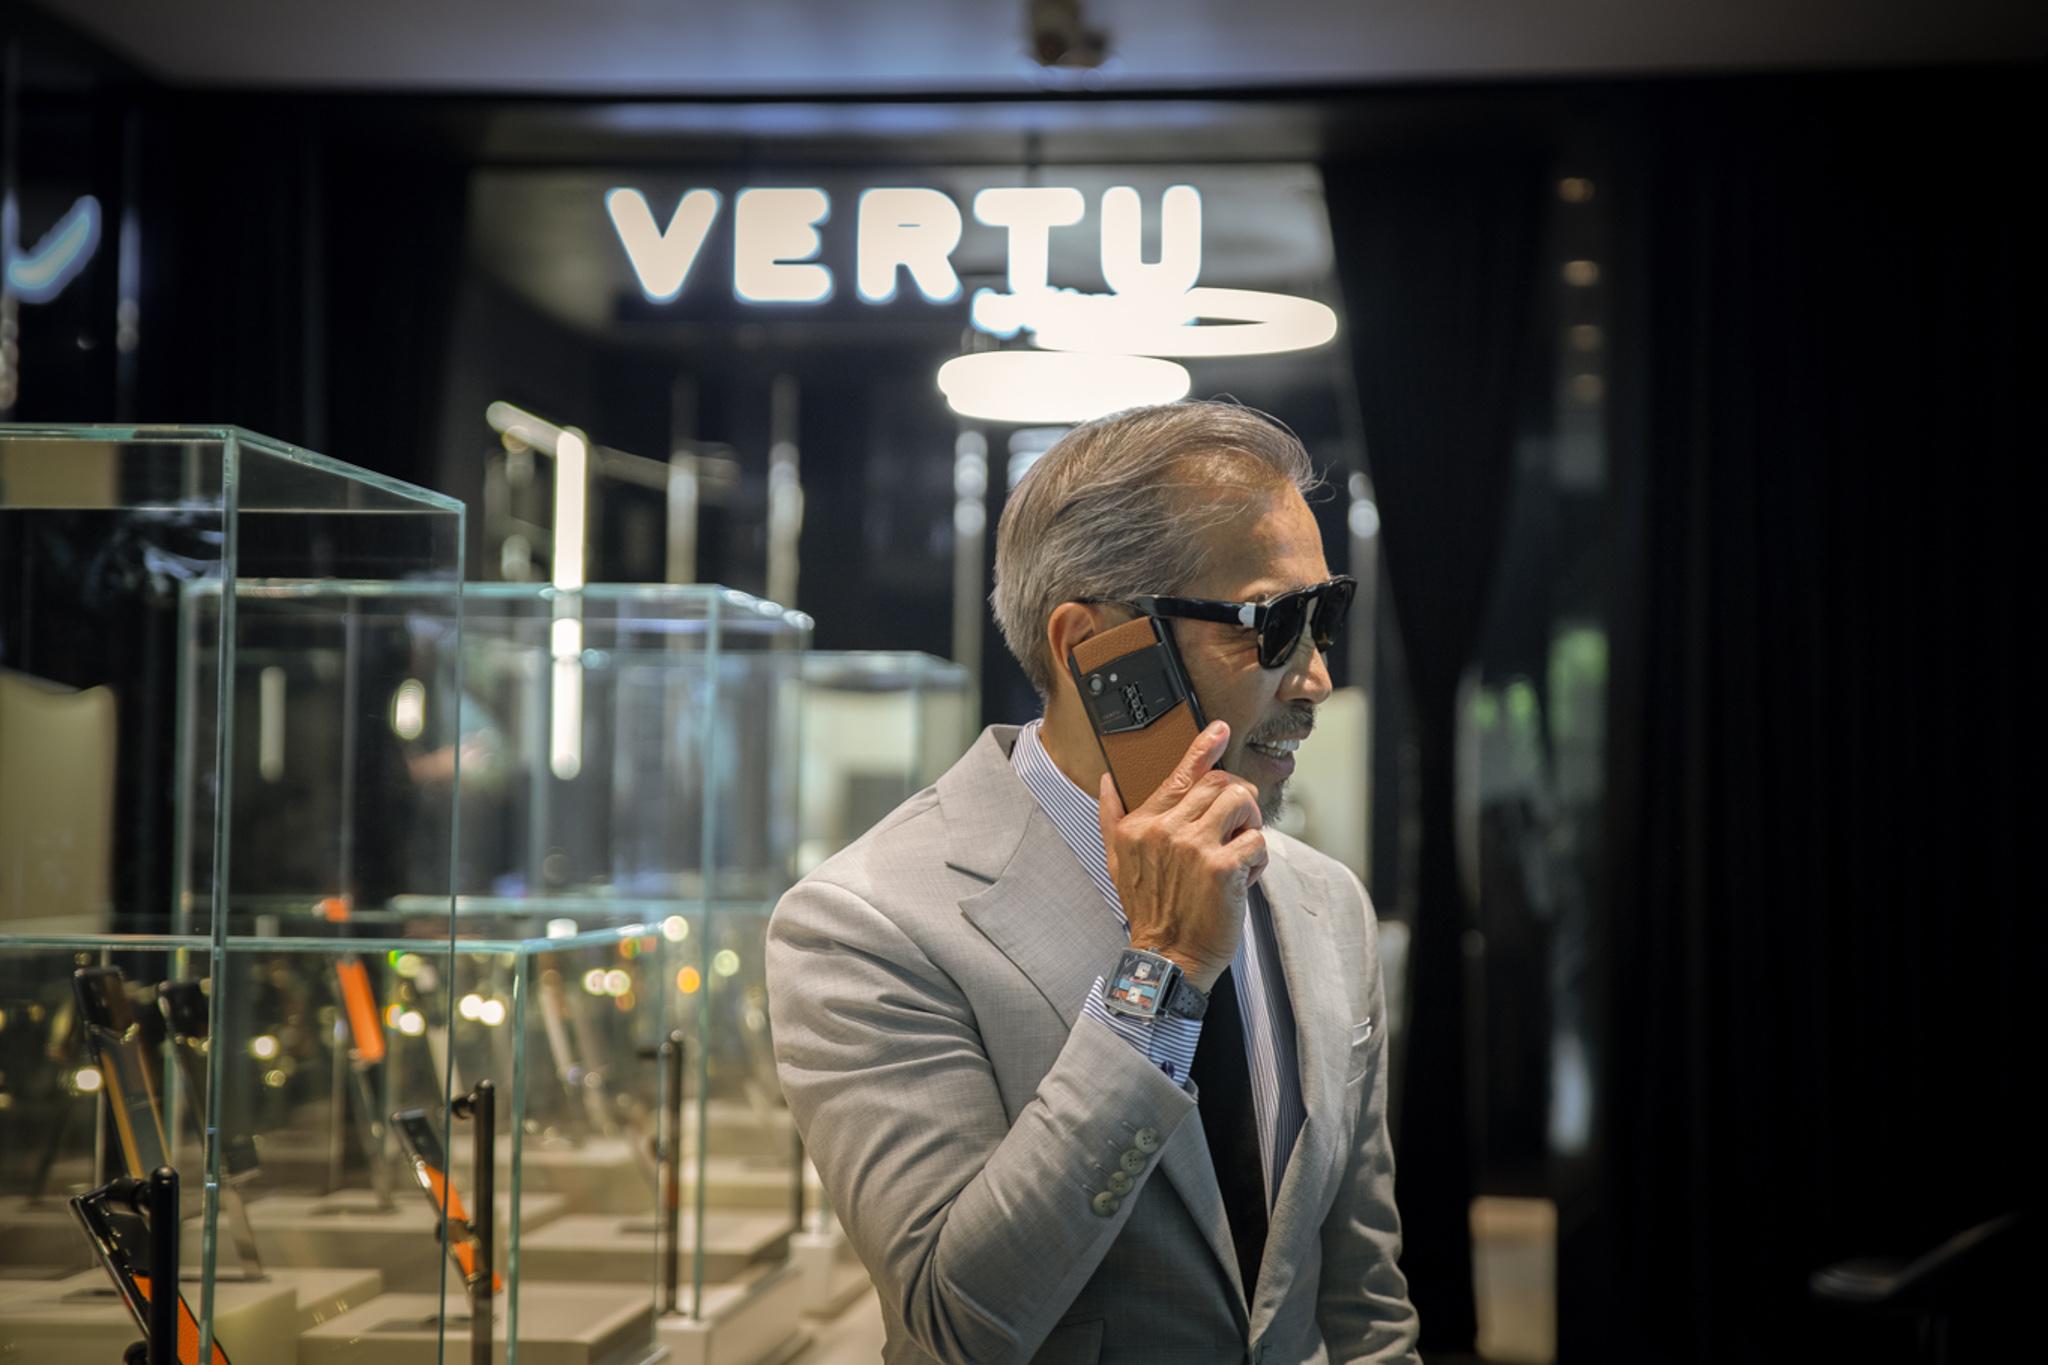 Vì sao giới nhà giàu thích sử dụng điện thoại Vertu?